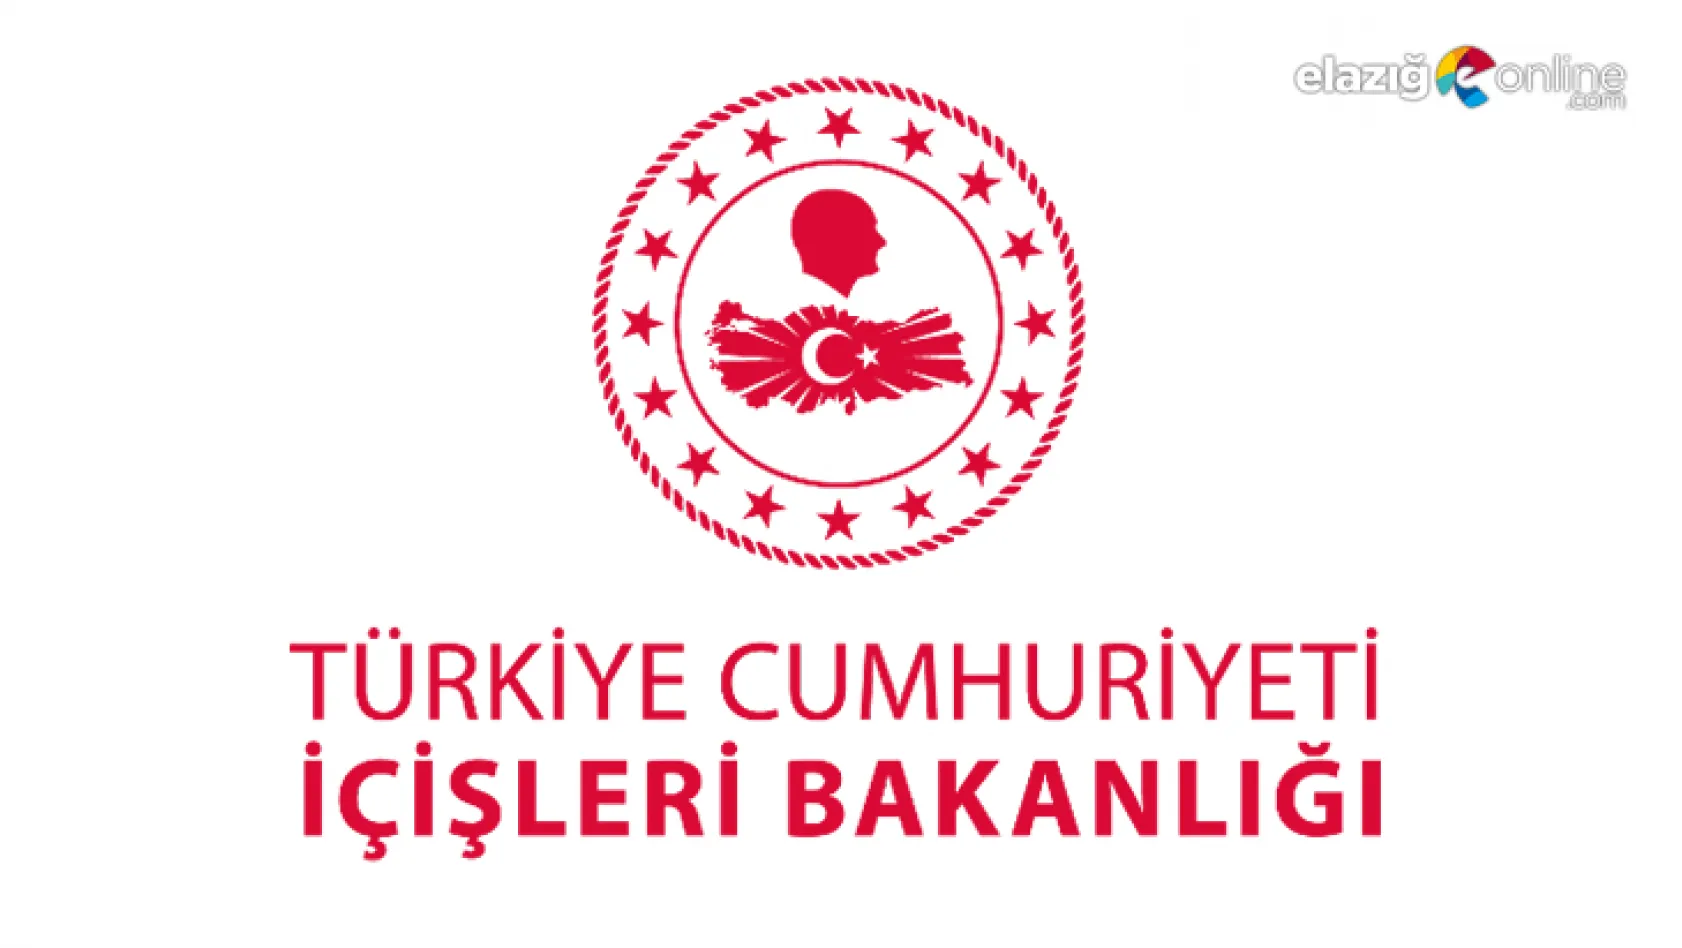 İçişleri Bakanlığı: 'Tunceli'de Turuncu Liste'de aranan terörist etkisiz hale getirildi'